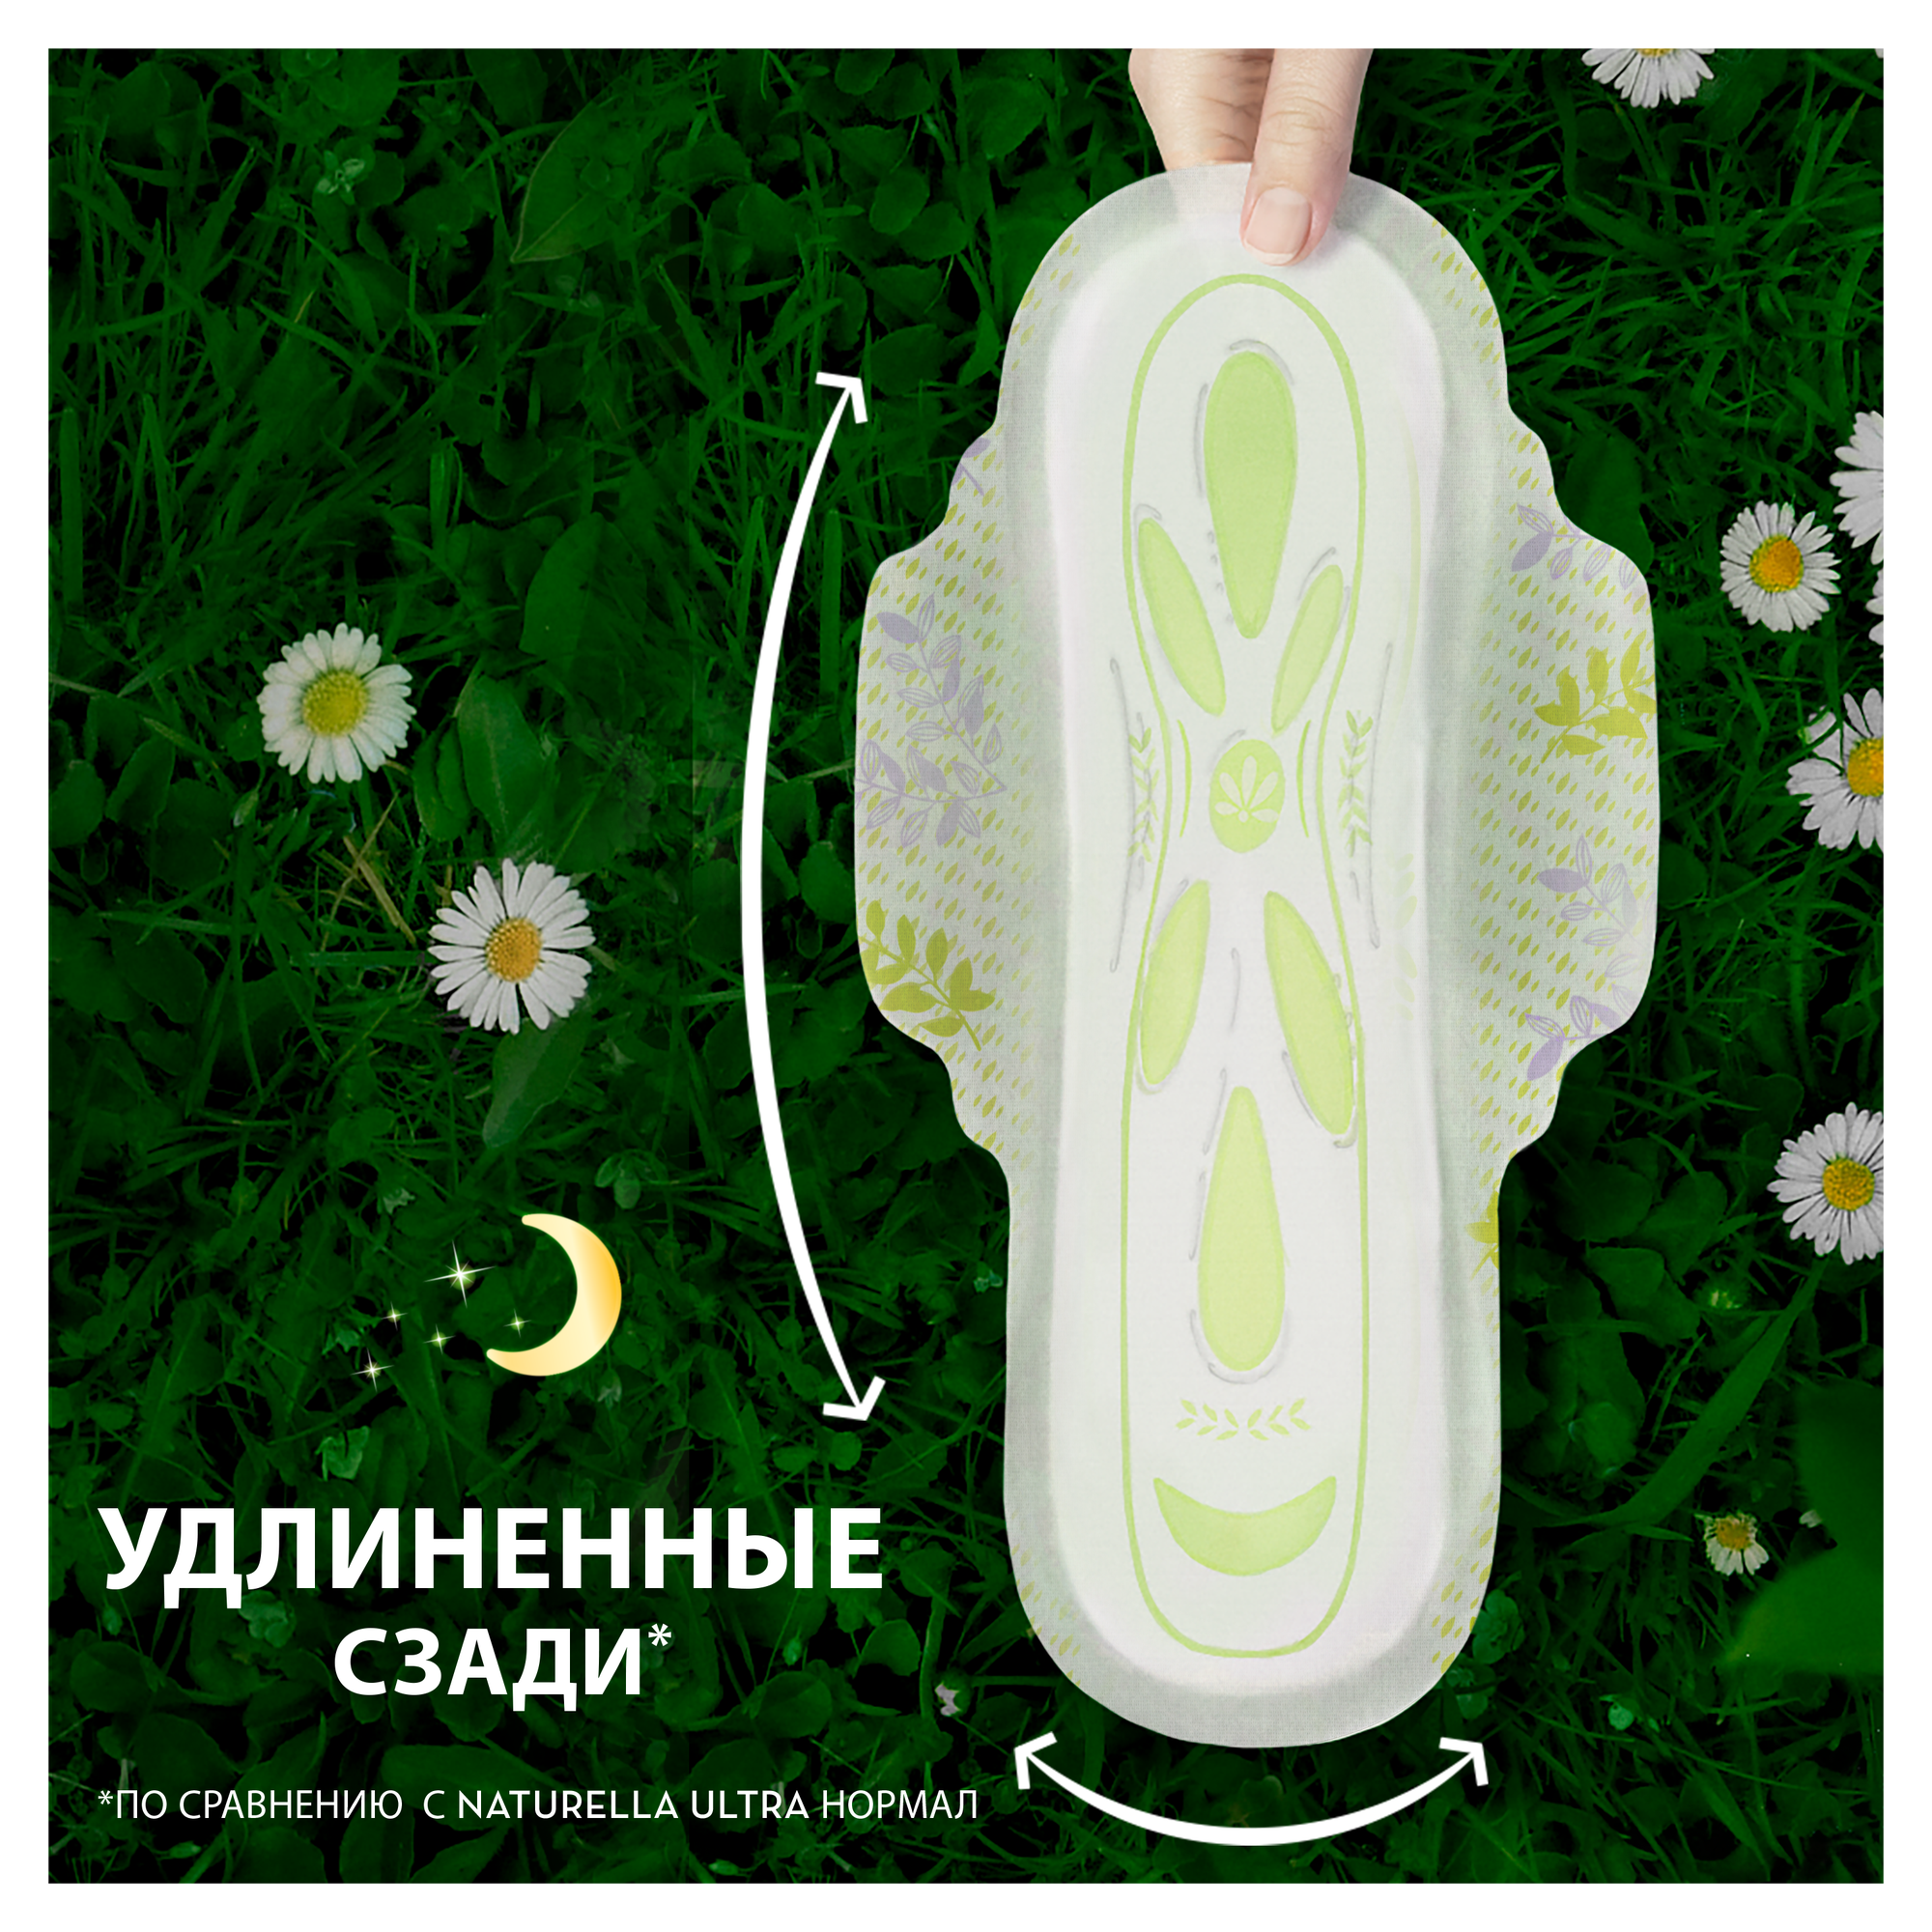 Женские гигиенические ароматизированные Прокладки Naturella Ultra Night с ароматом ромашки, 56 шт.